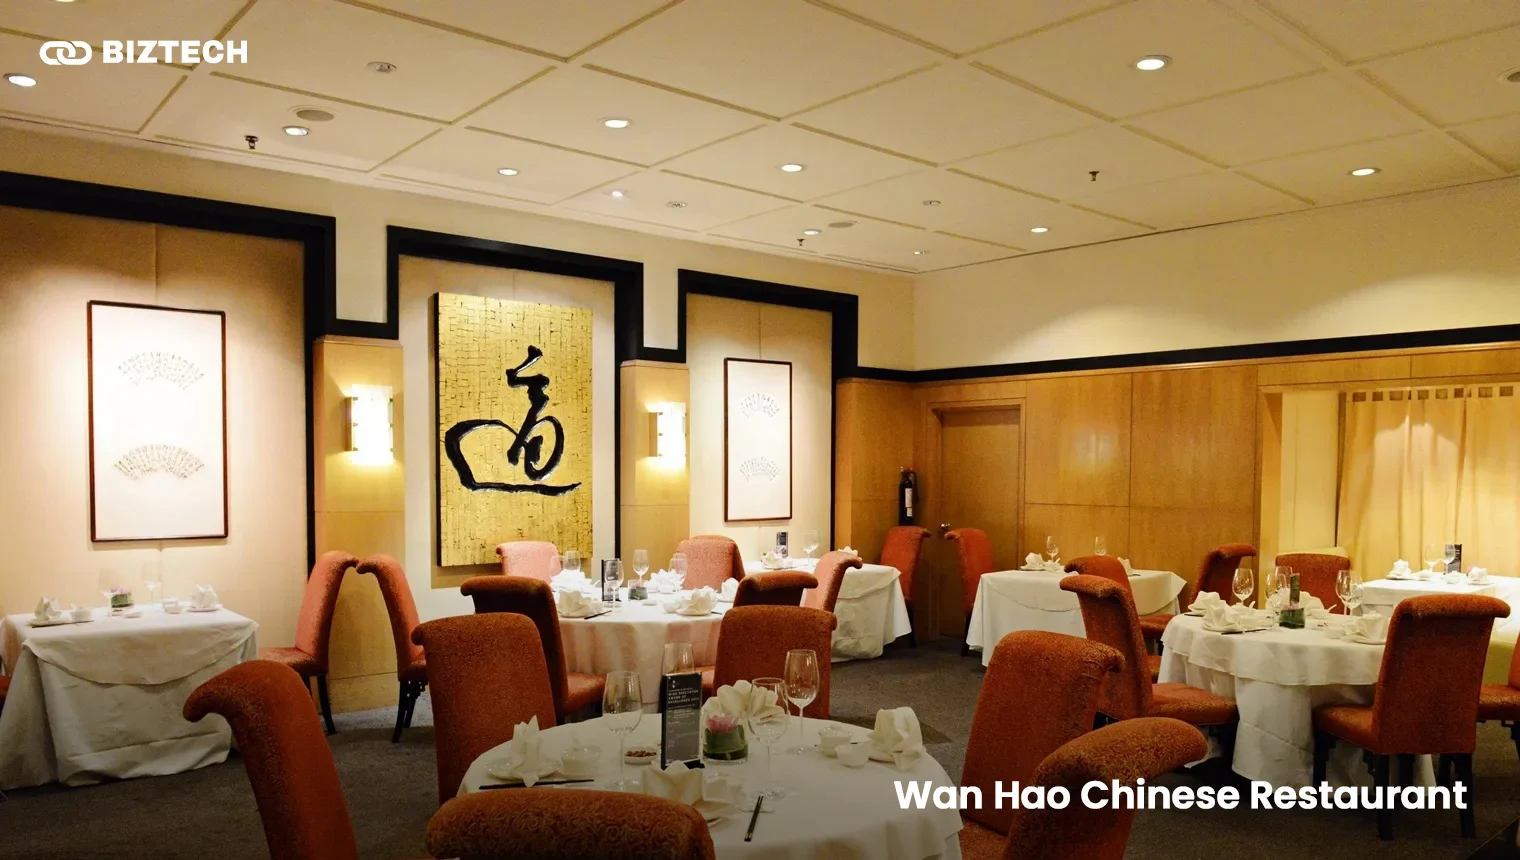 Wan Hao Chinese Restaurant